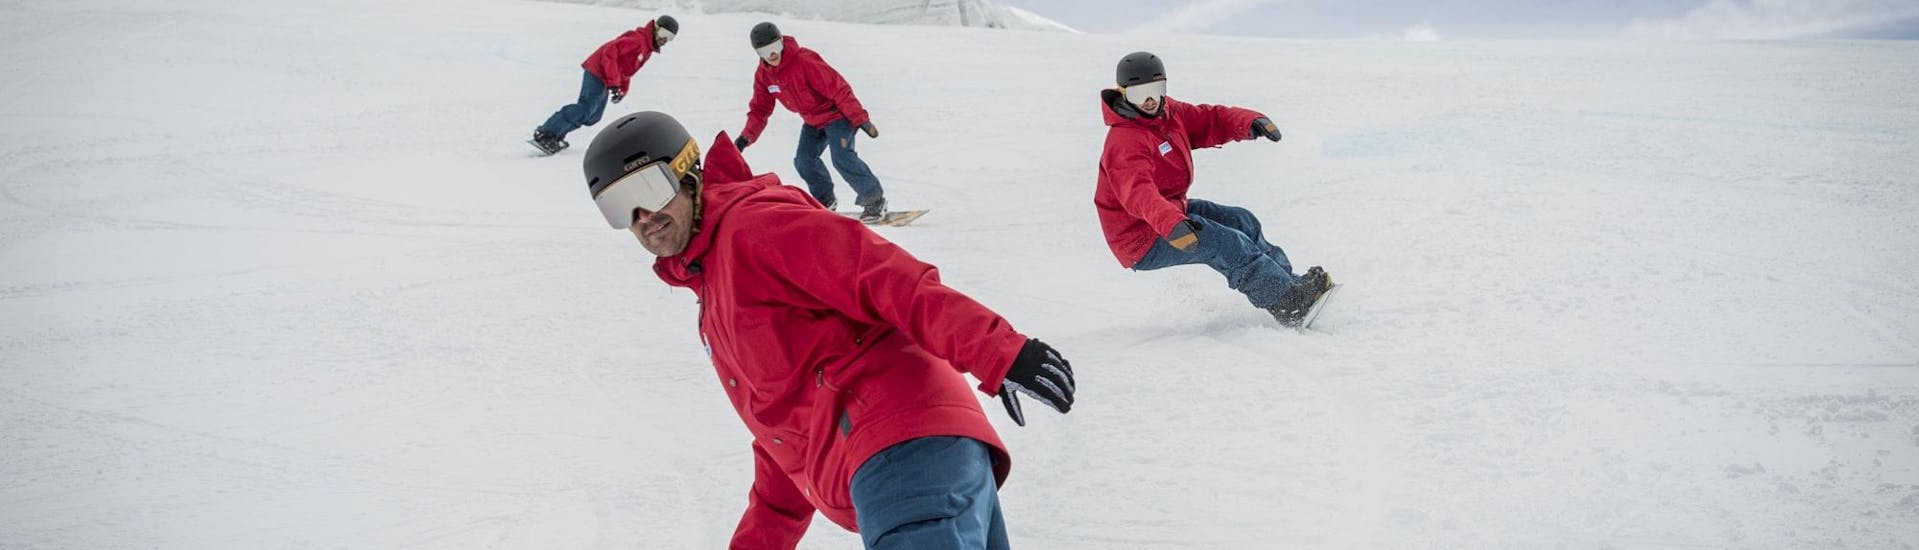 Lezioni di Snowboard a partire da 6 anni con esperienza.